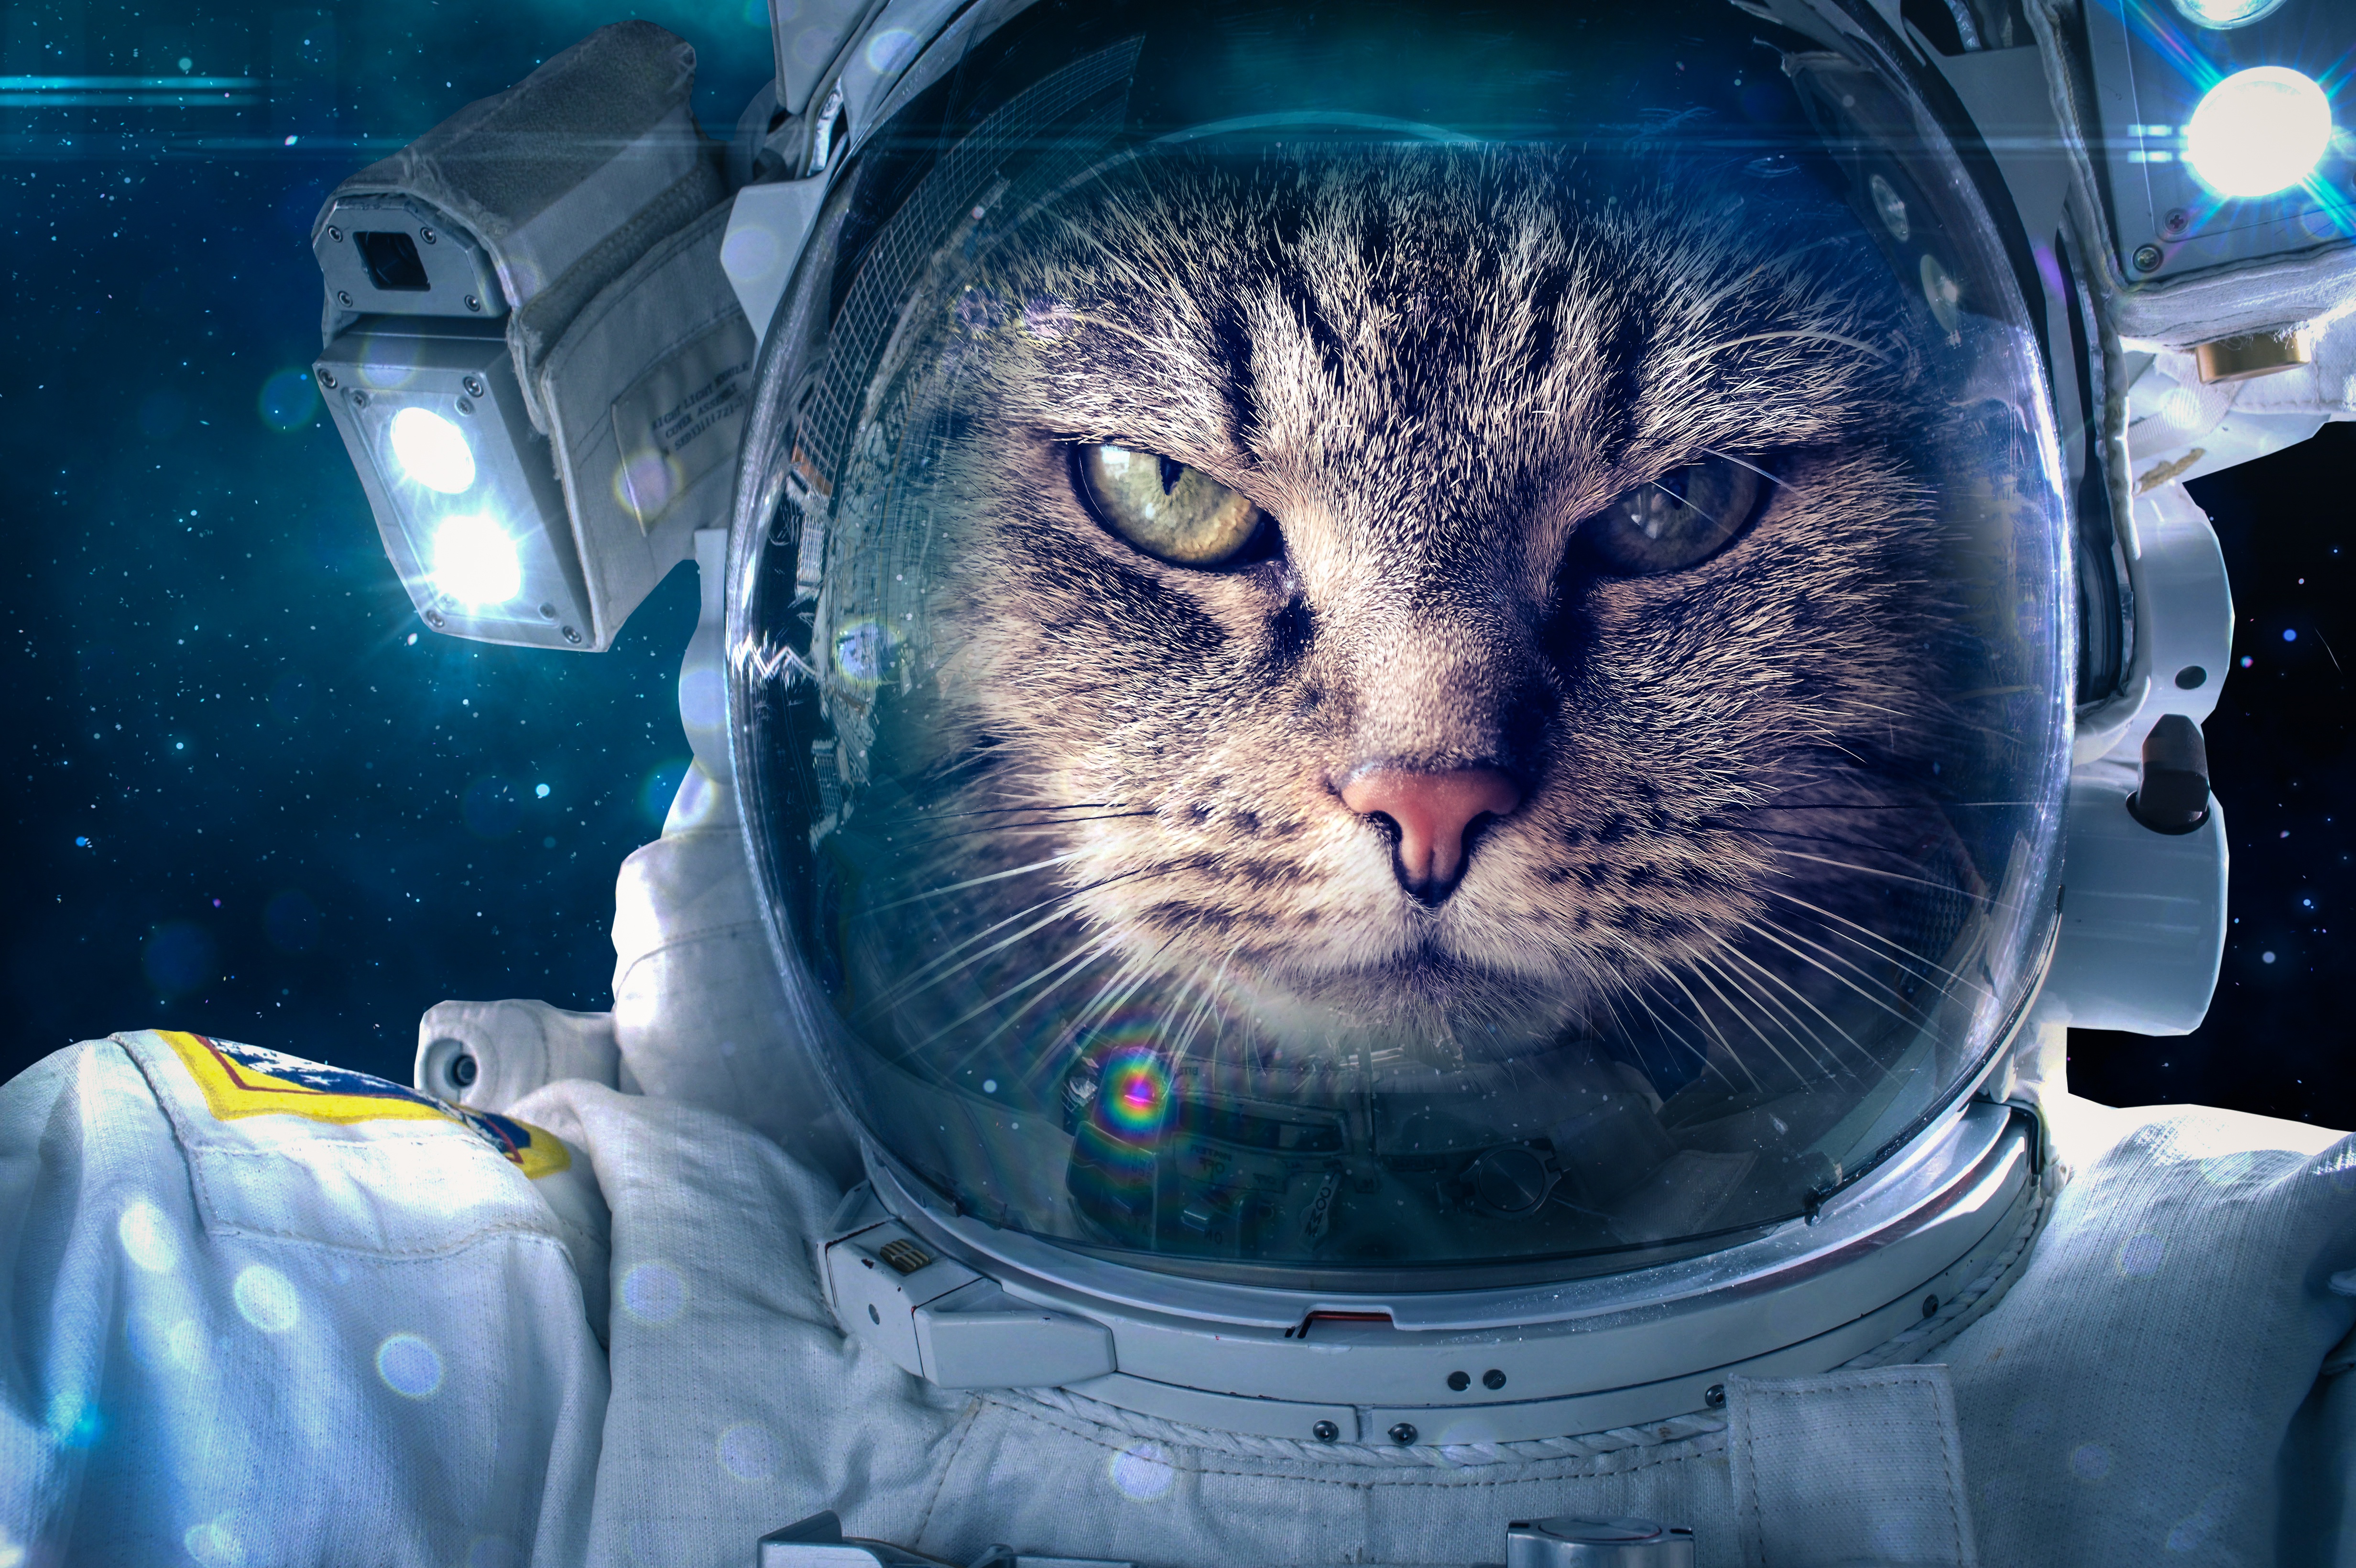 壁紙 4928x3280 飼い猫 宇宙飛行士 おもしろい 動物 ダウンロード 写真